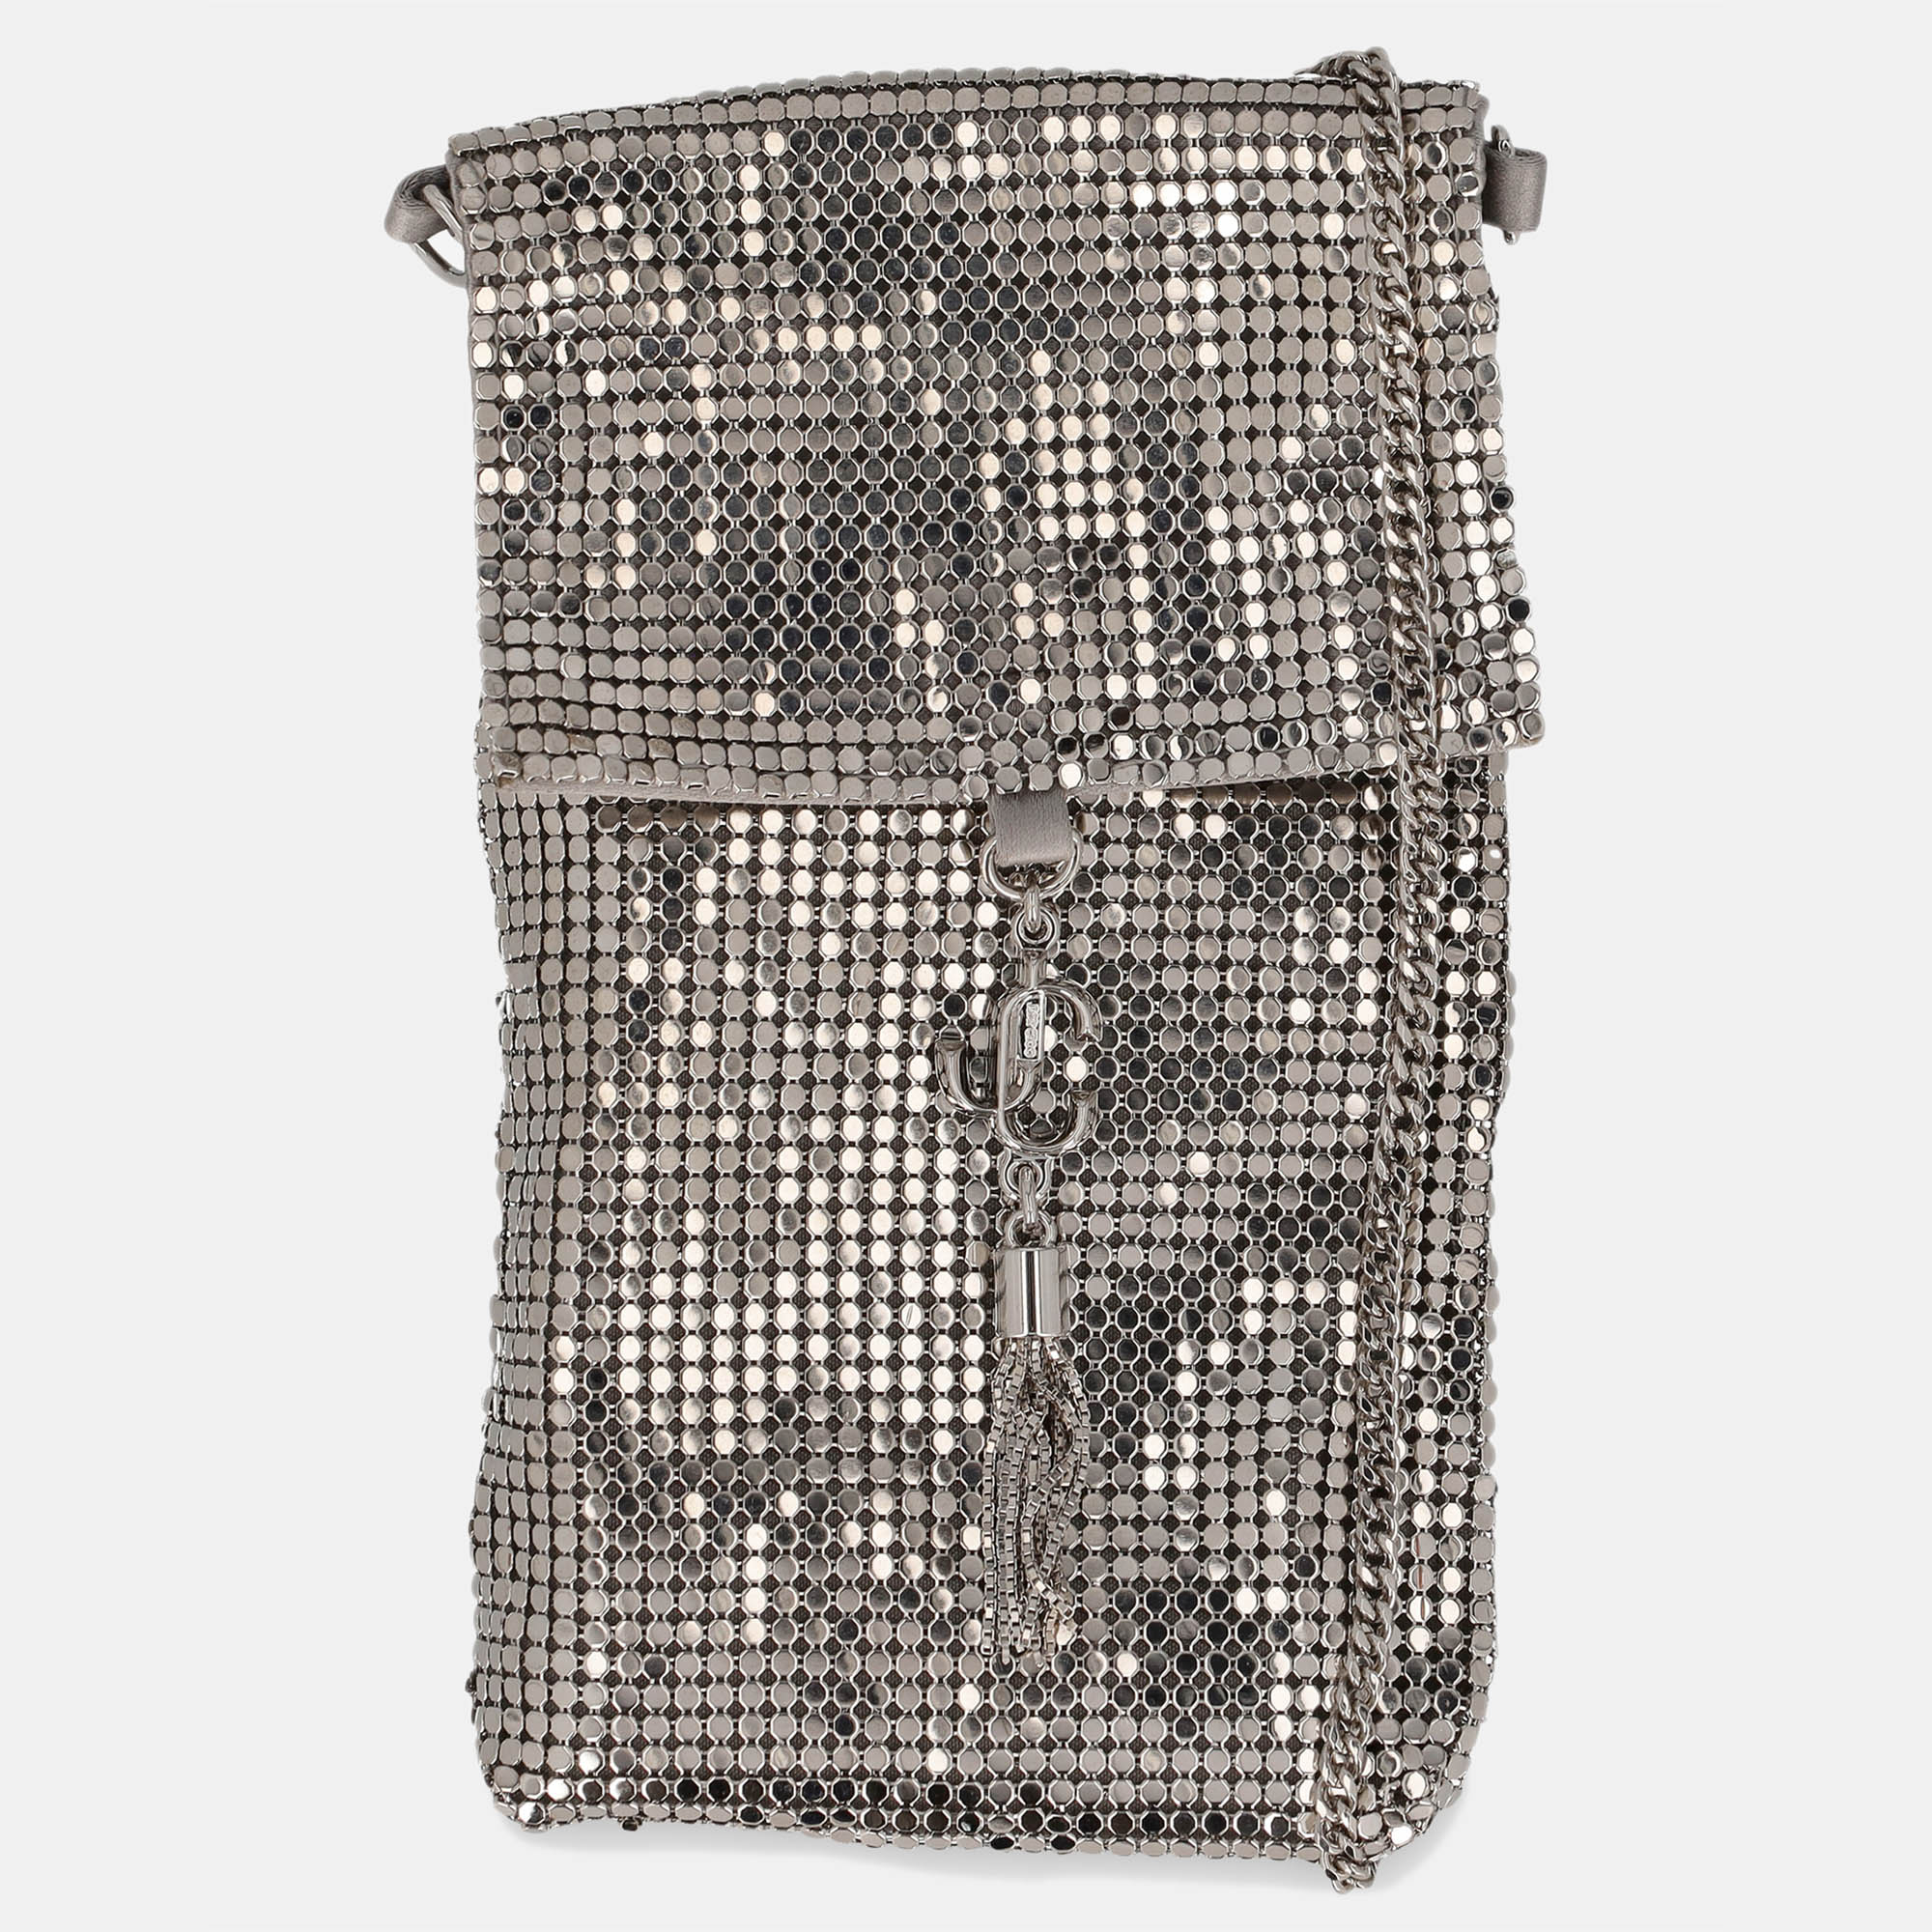 Jimmy Choo  Women's Metal Cross Body Bag - Silver - One Size